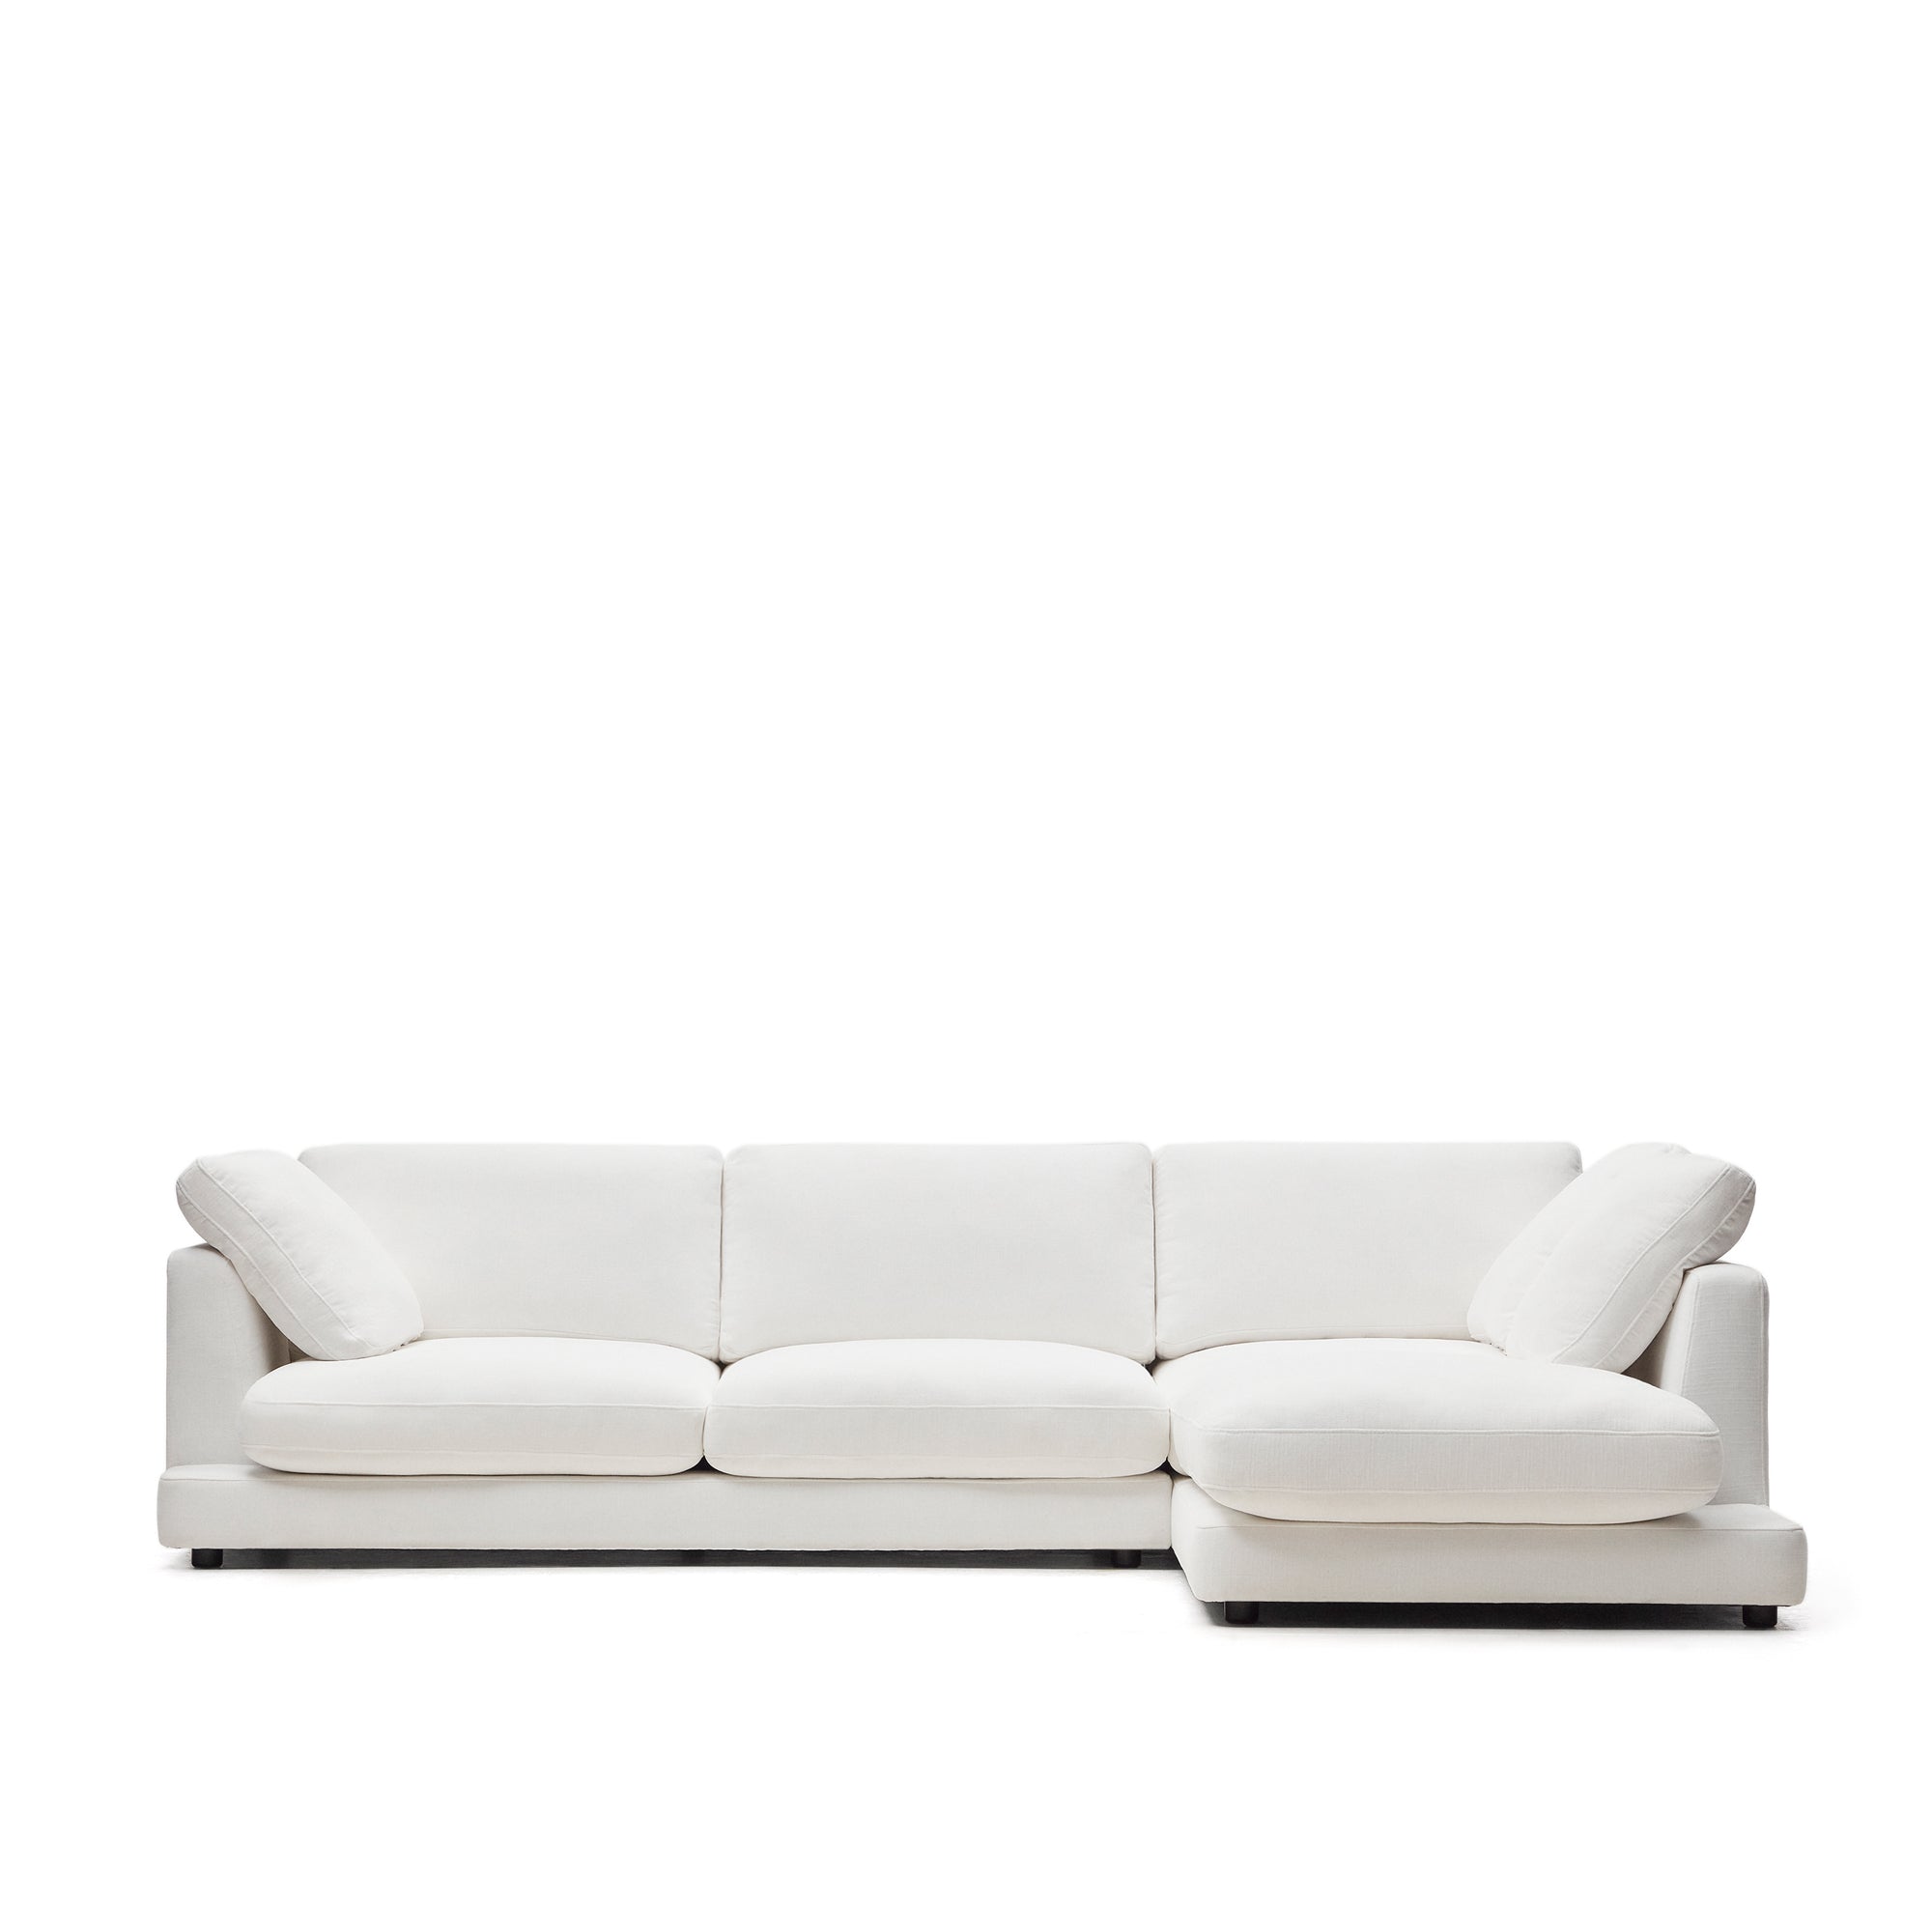 Gala 4 személyes kanapé jobb oldali fekvőfotellel, fehér színben, 300 cm